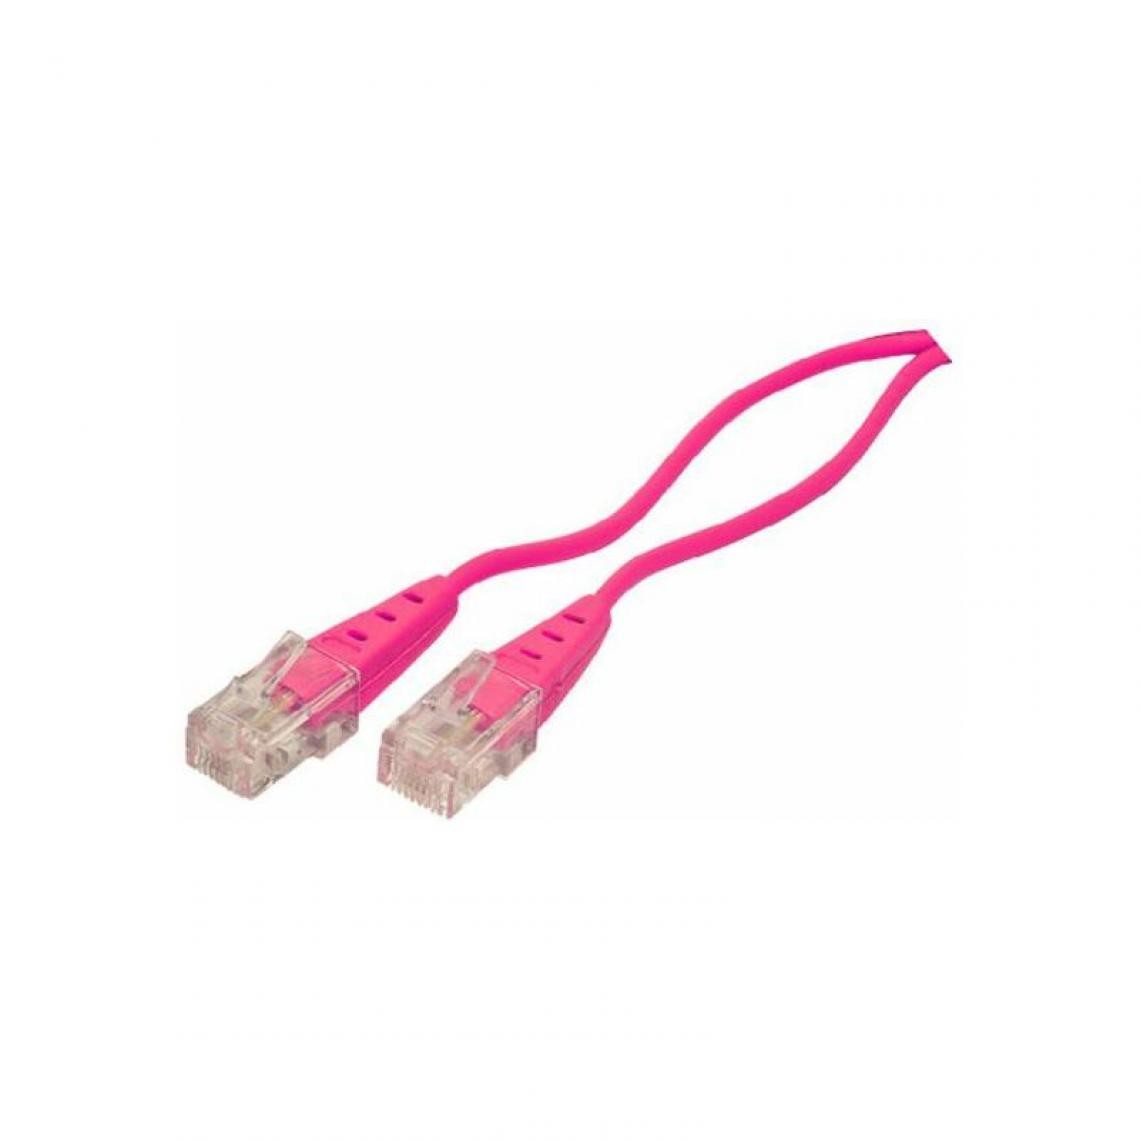 shiverpeaks - shiverpeaks BASIC-S Câble de connexion RNIS, magenta, 1,5 m () - Accessoires Téléphone Fixe